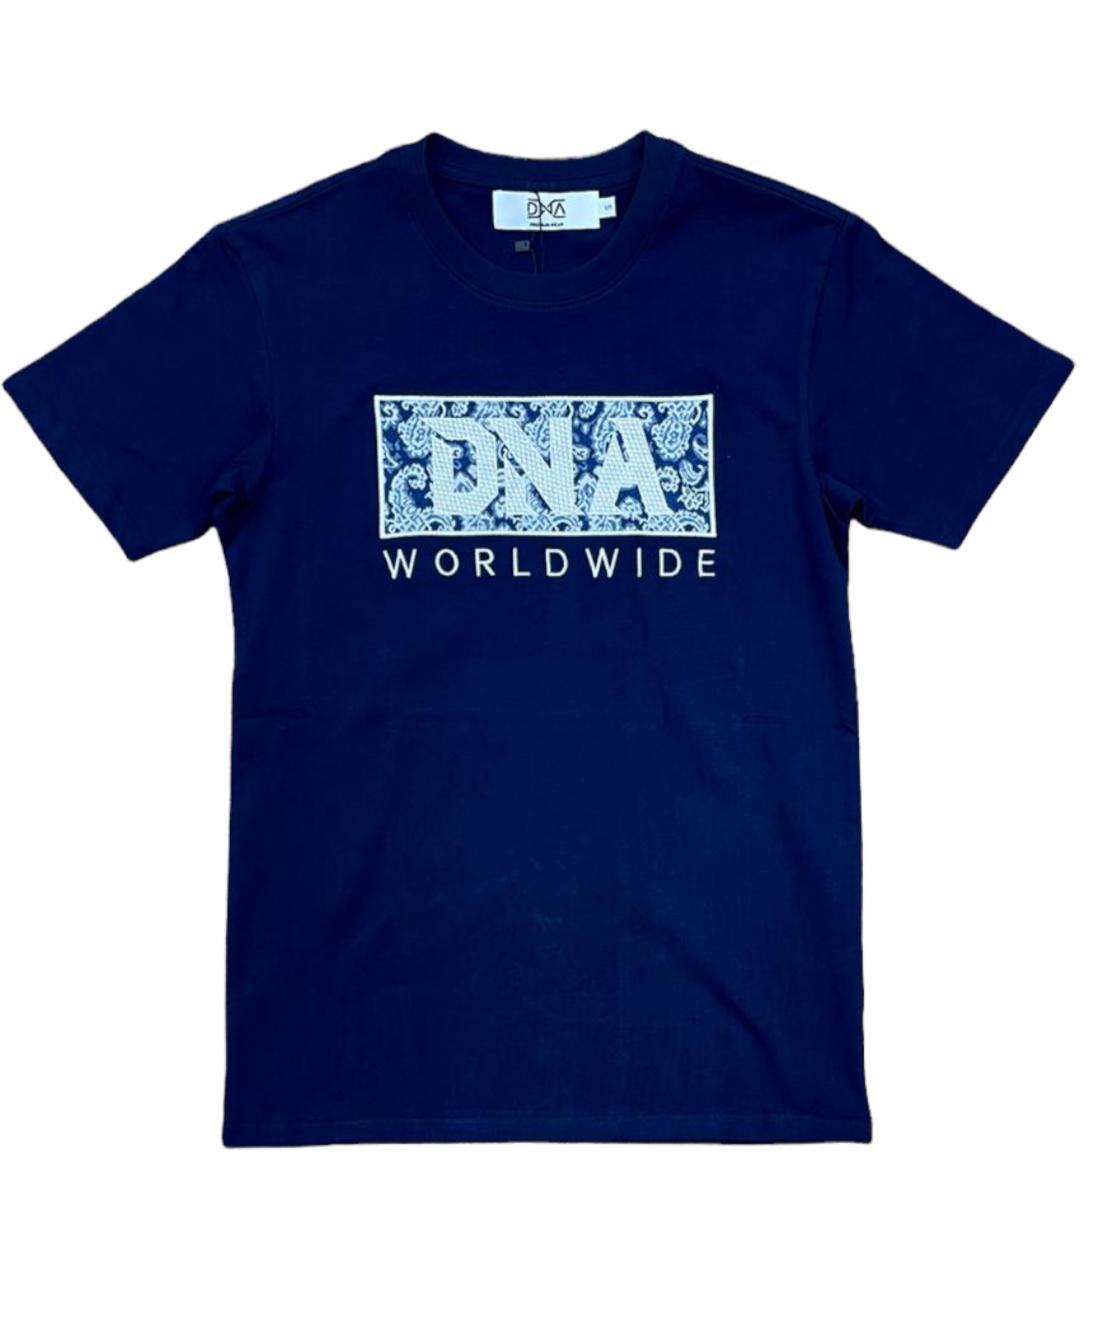 DNA Worldwide T-shirt - Navy Blue